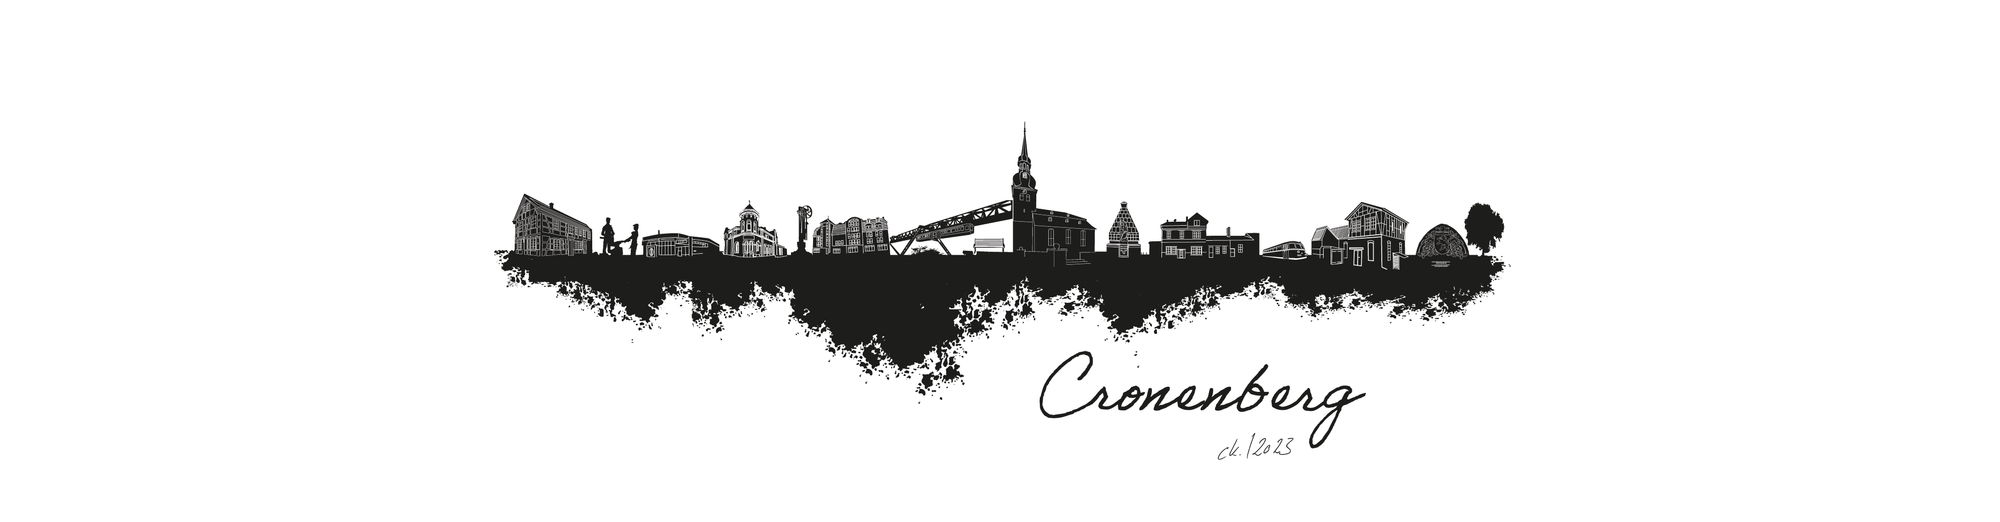 Dorfposter: Cronenberg Banner